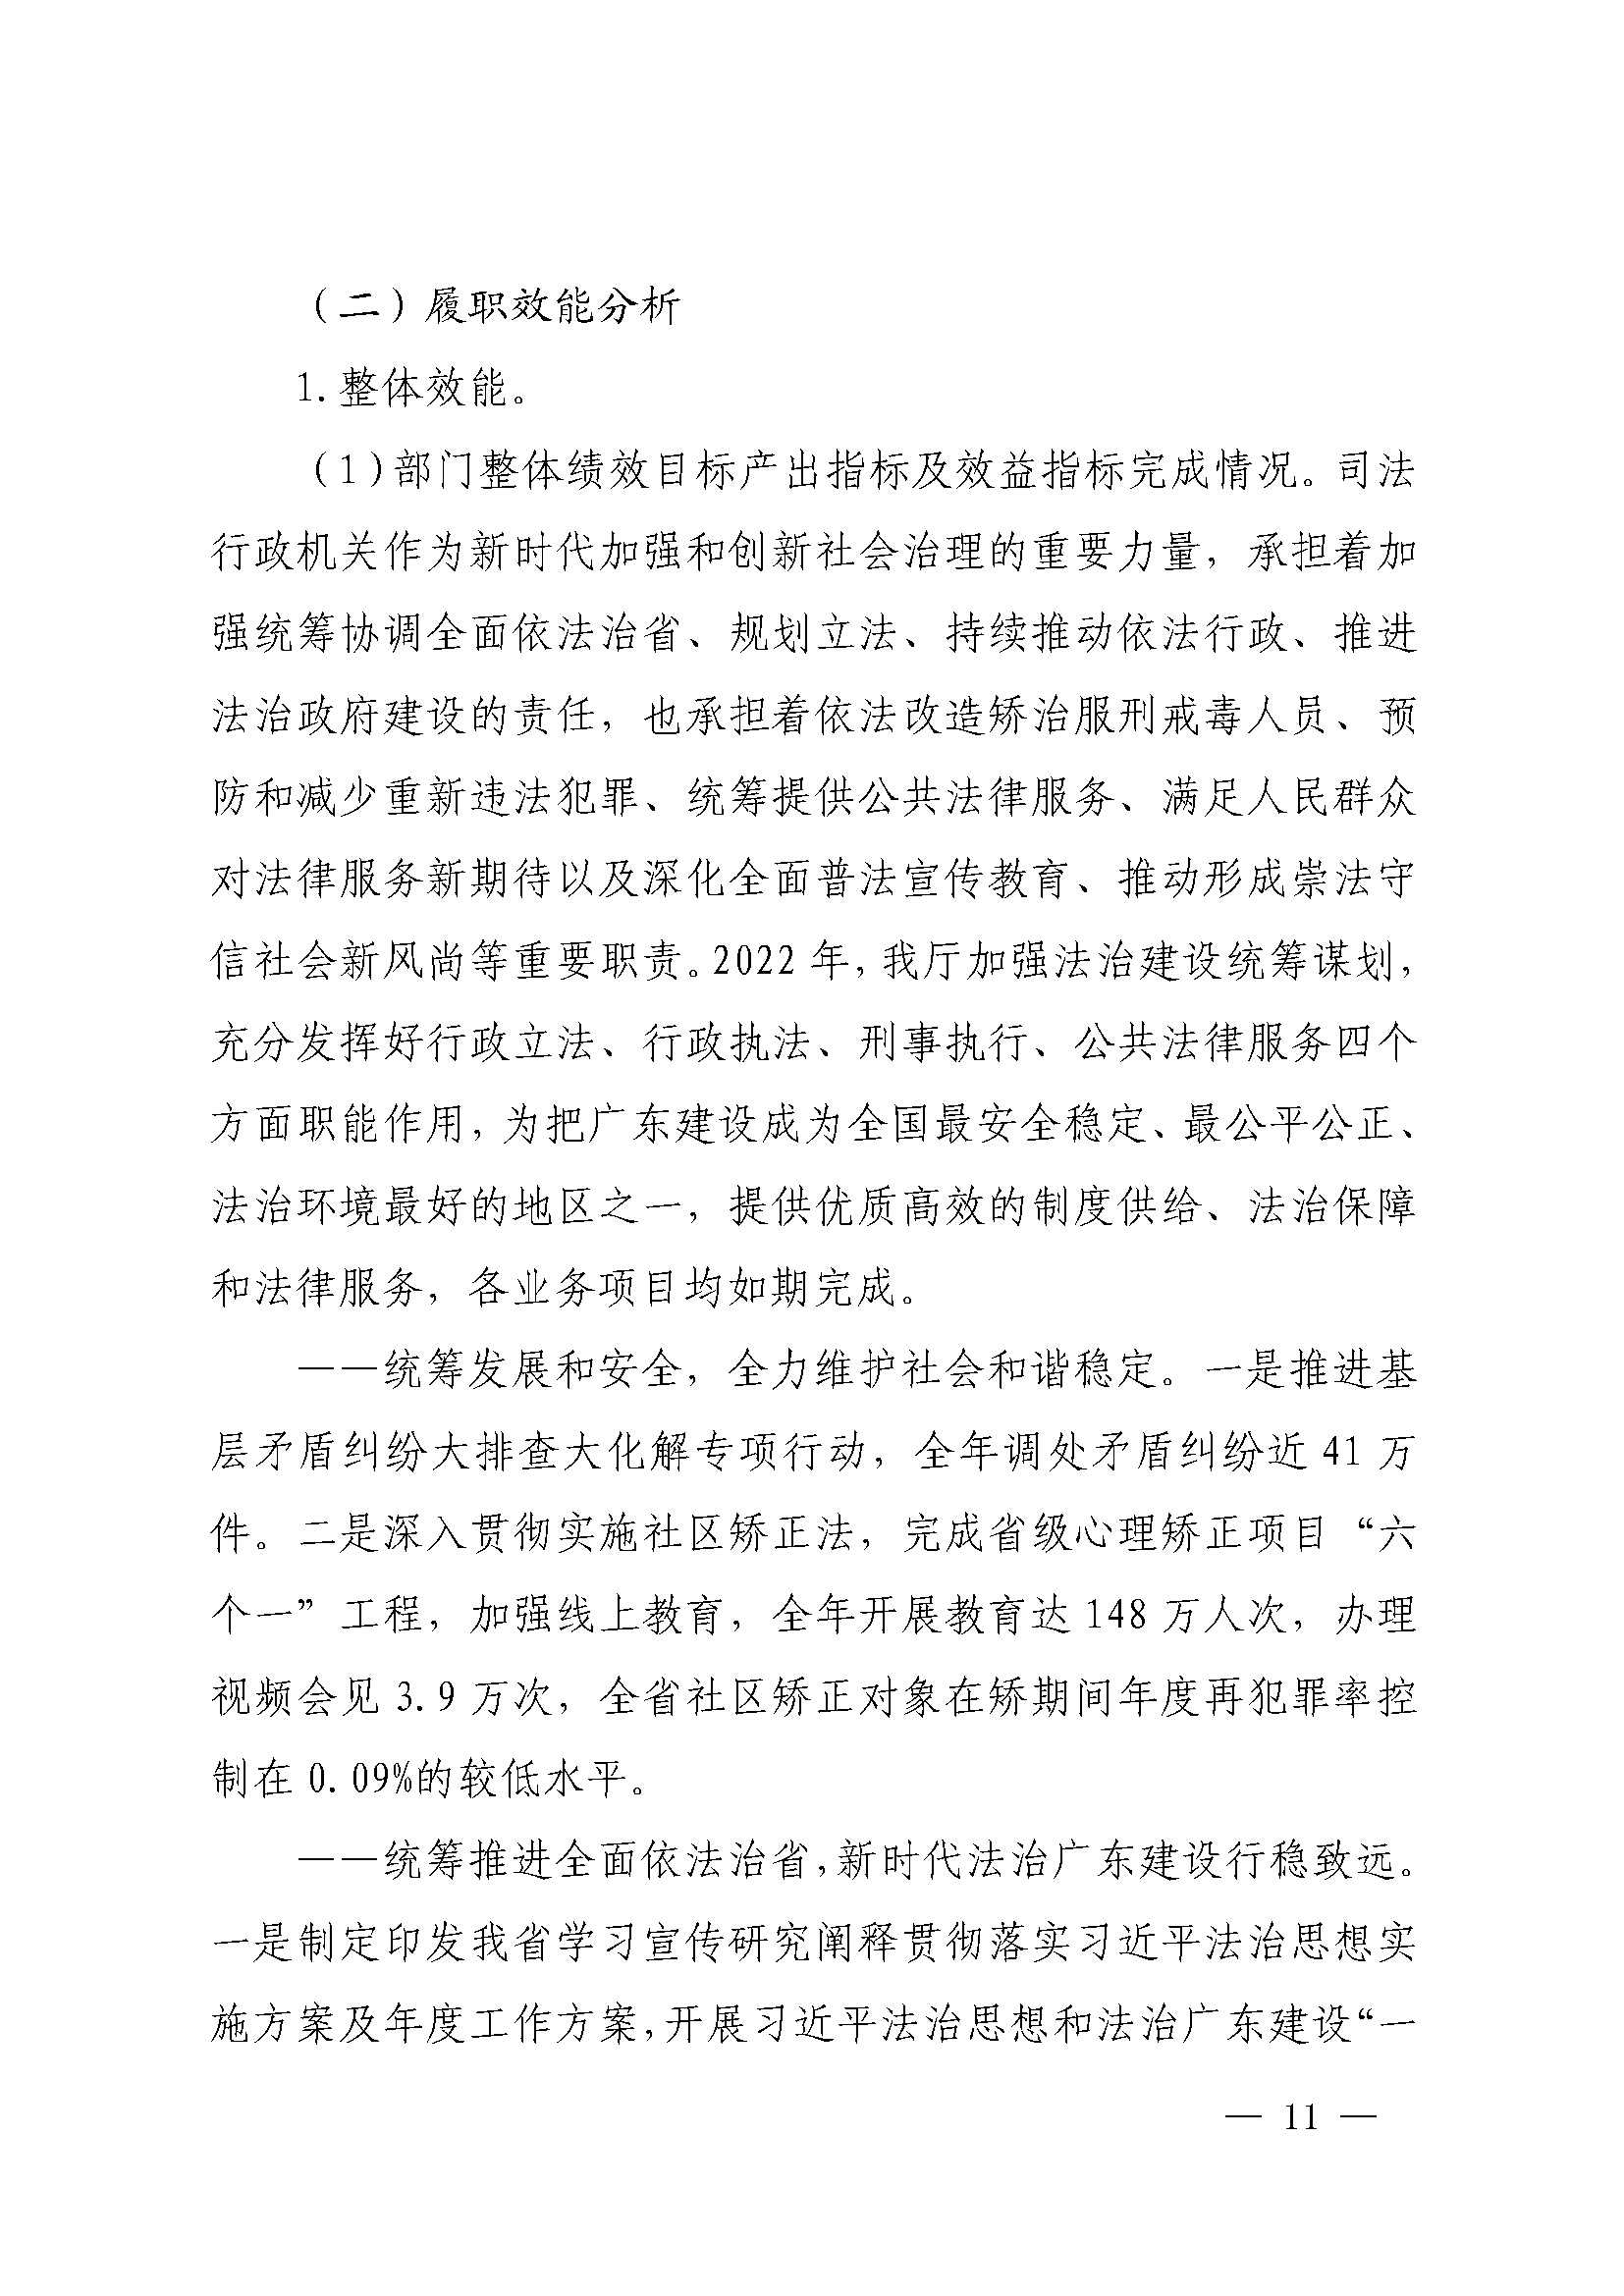 广东省司法厅2022年度部门整体支出绩效自评报告_页面_11.jpg